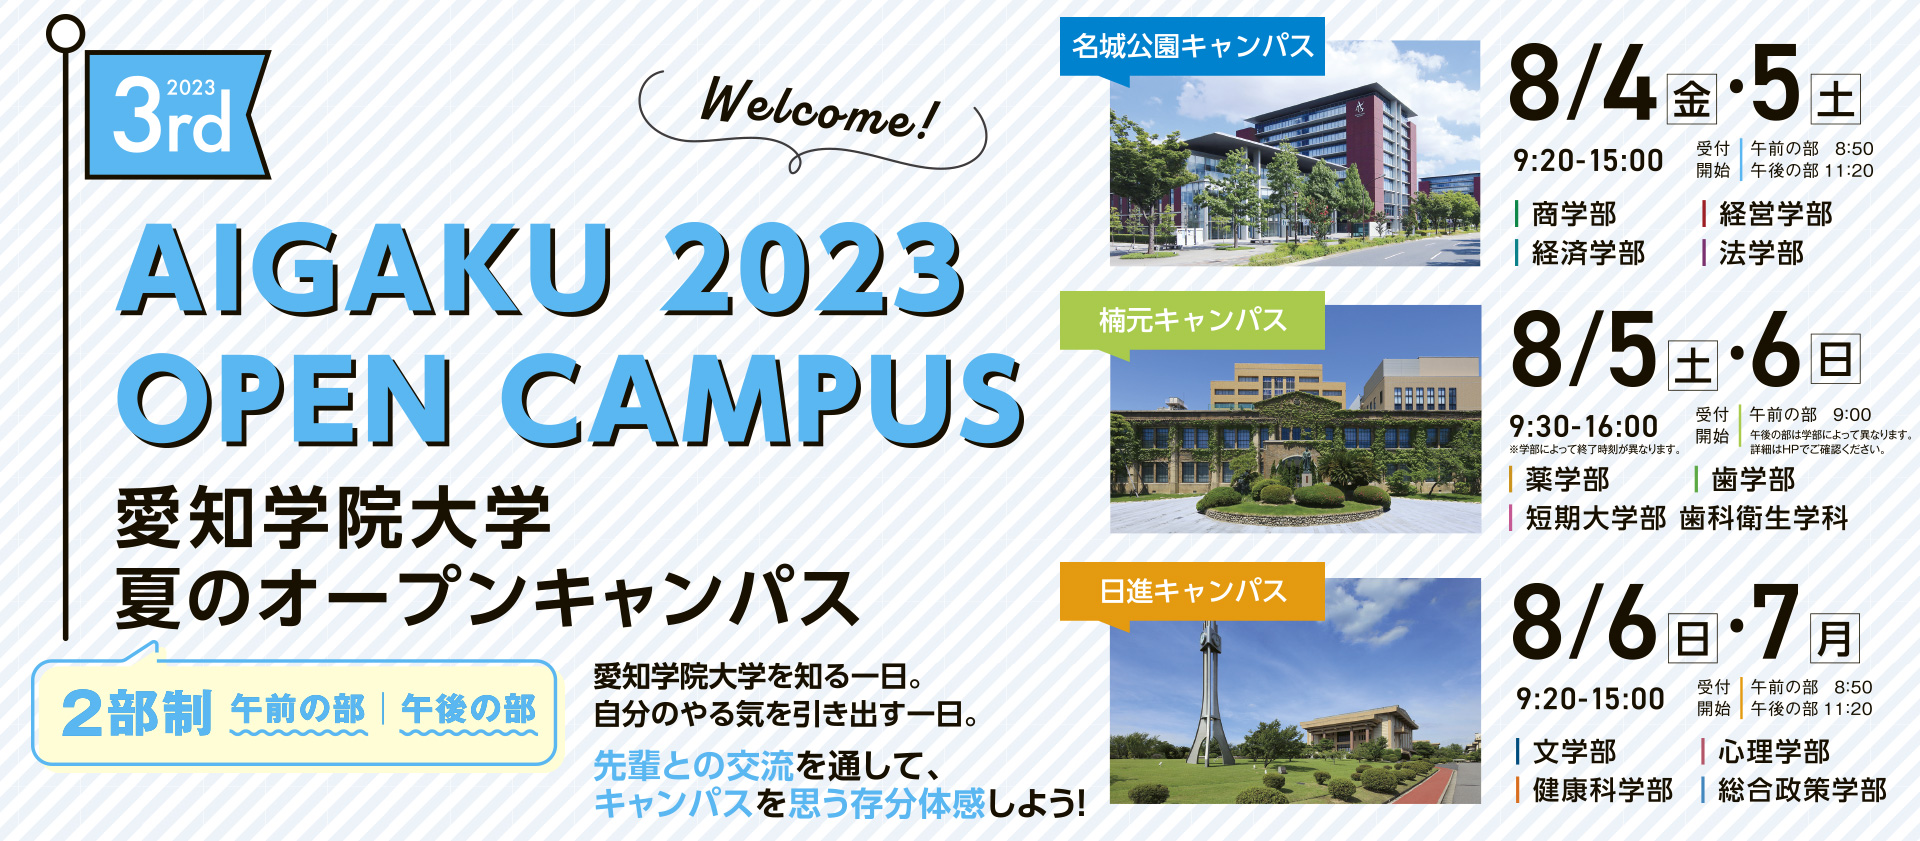 夏のオープンキャンパス 2023